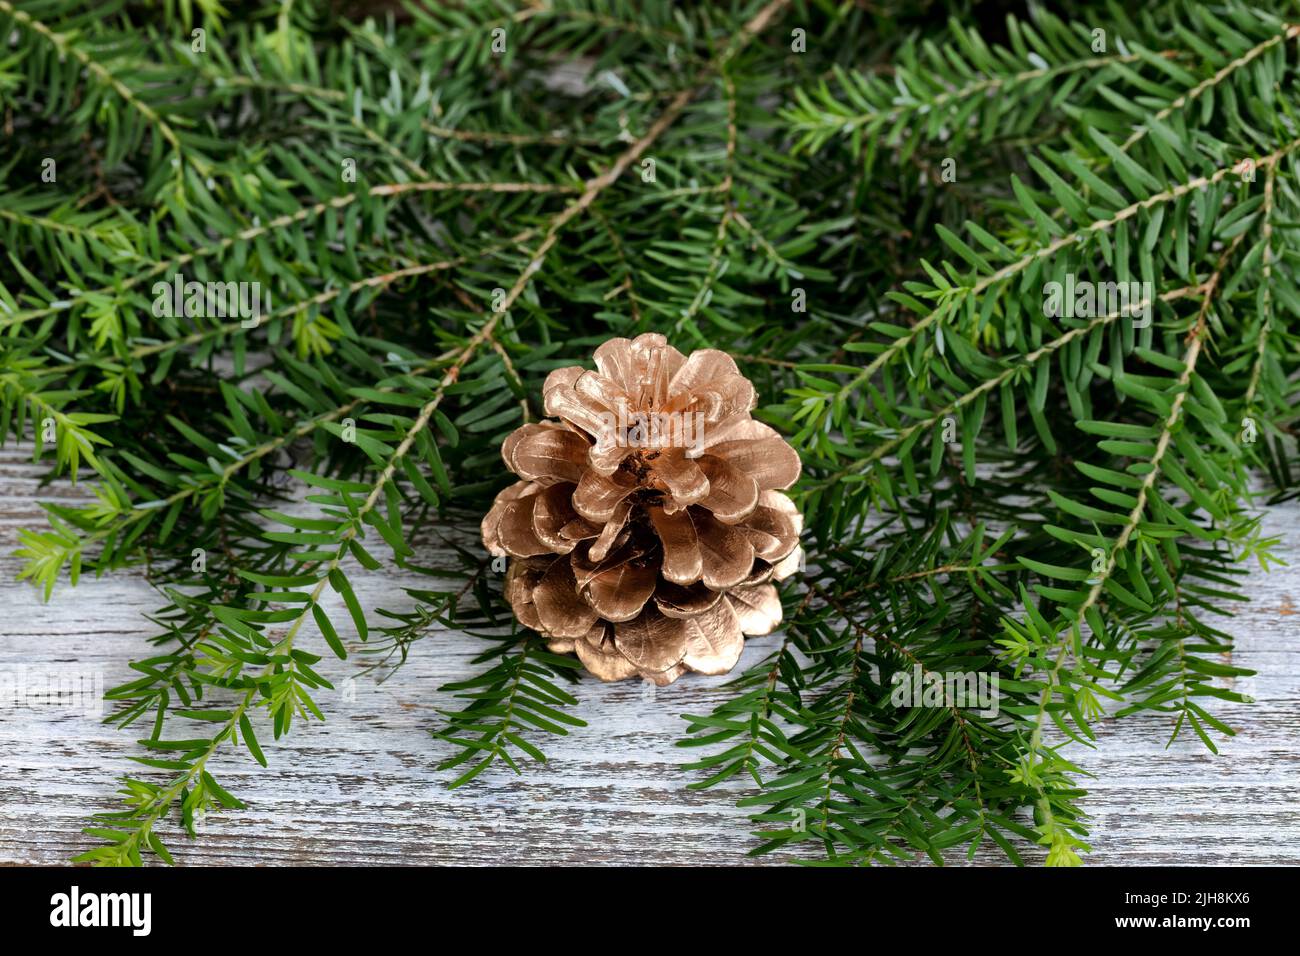 Primer plano de un adorno de pino de color dorado con ramas de abeto real sobre madera rústica blanca para el fondo de Navidad o Año Nuevo Foto de stock